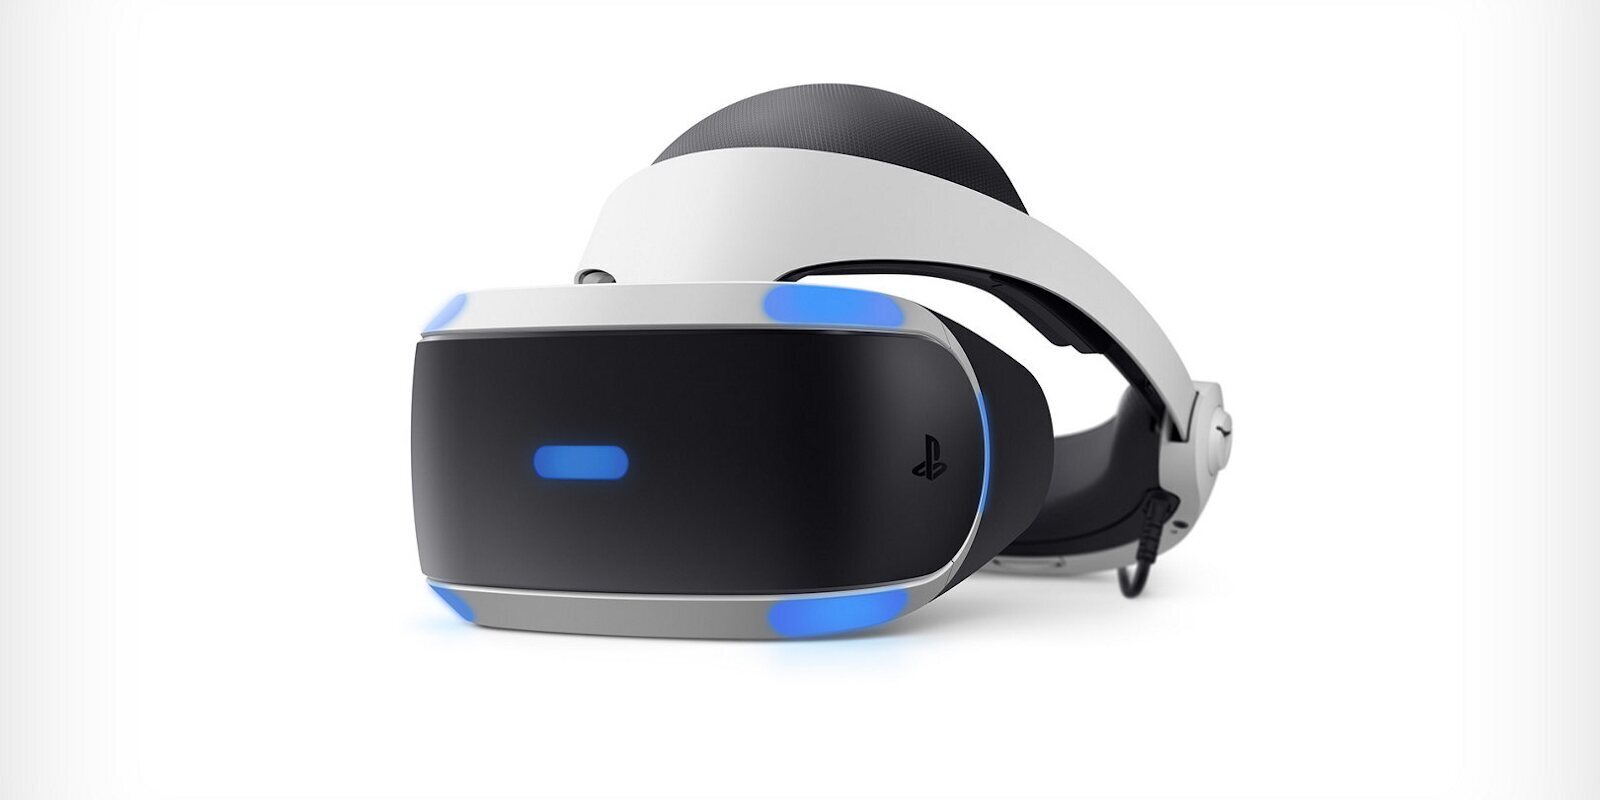 El padre de PlayStation habla sobre los auriculares VR: "Simplemente son molestos"